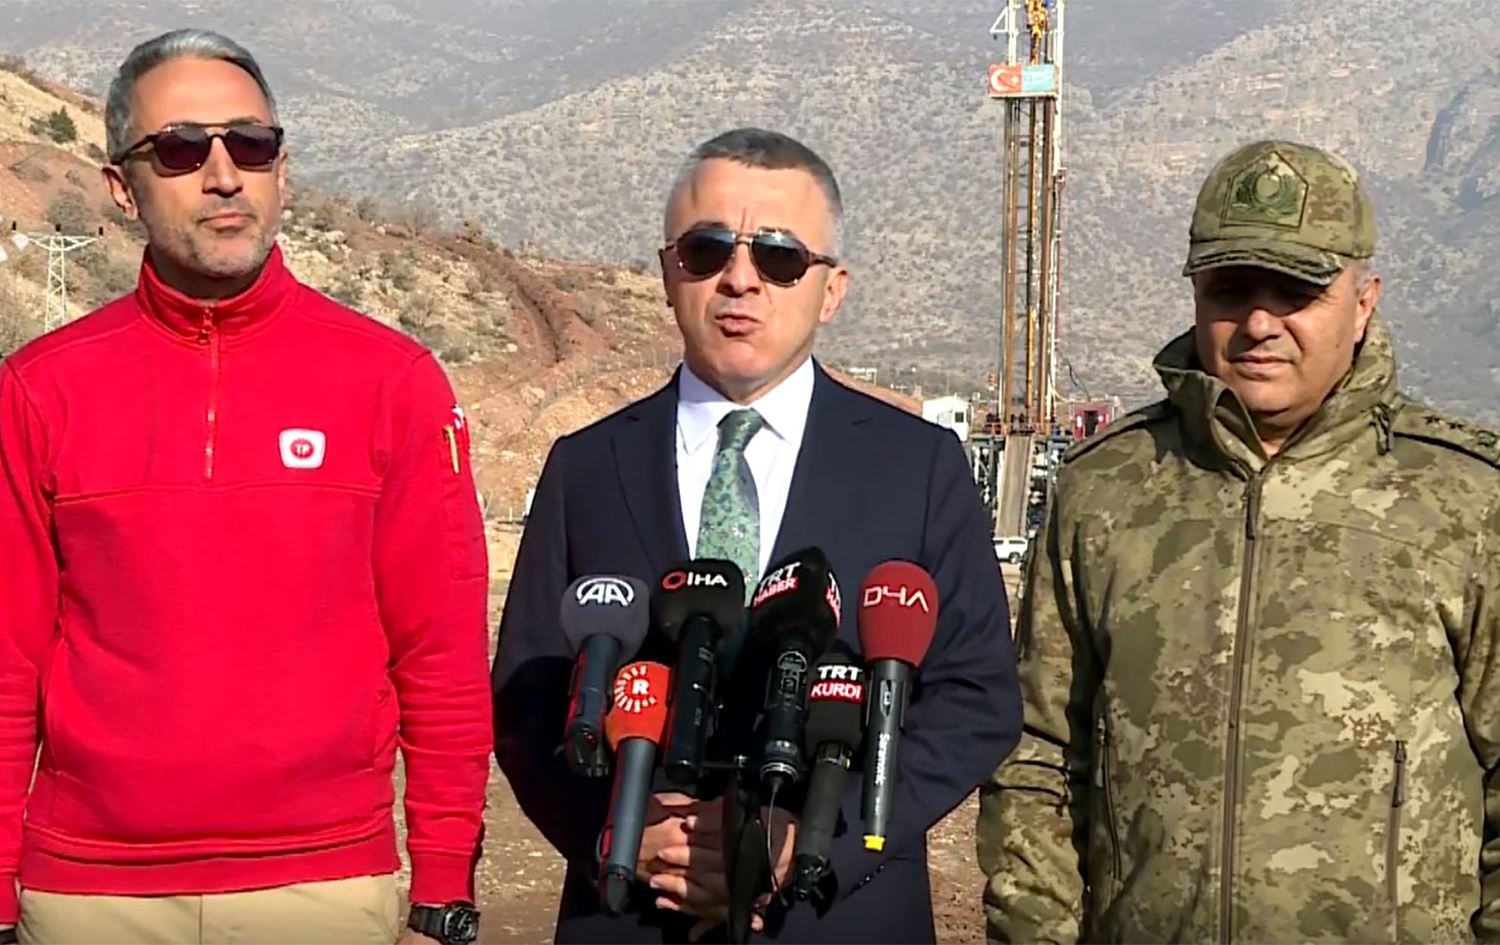 الإعلان عن اكتشاف نفطي جديد في محافظة شرناق التركية .